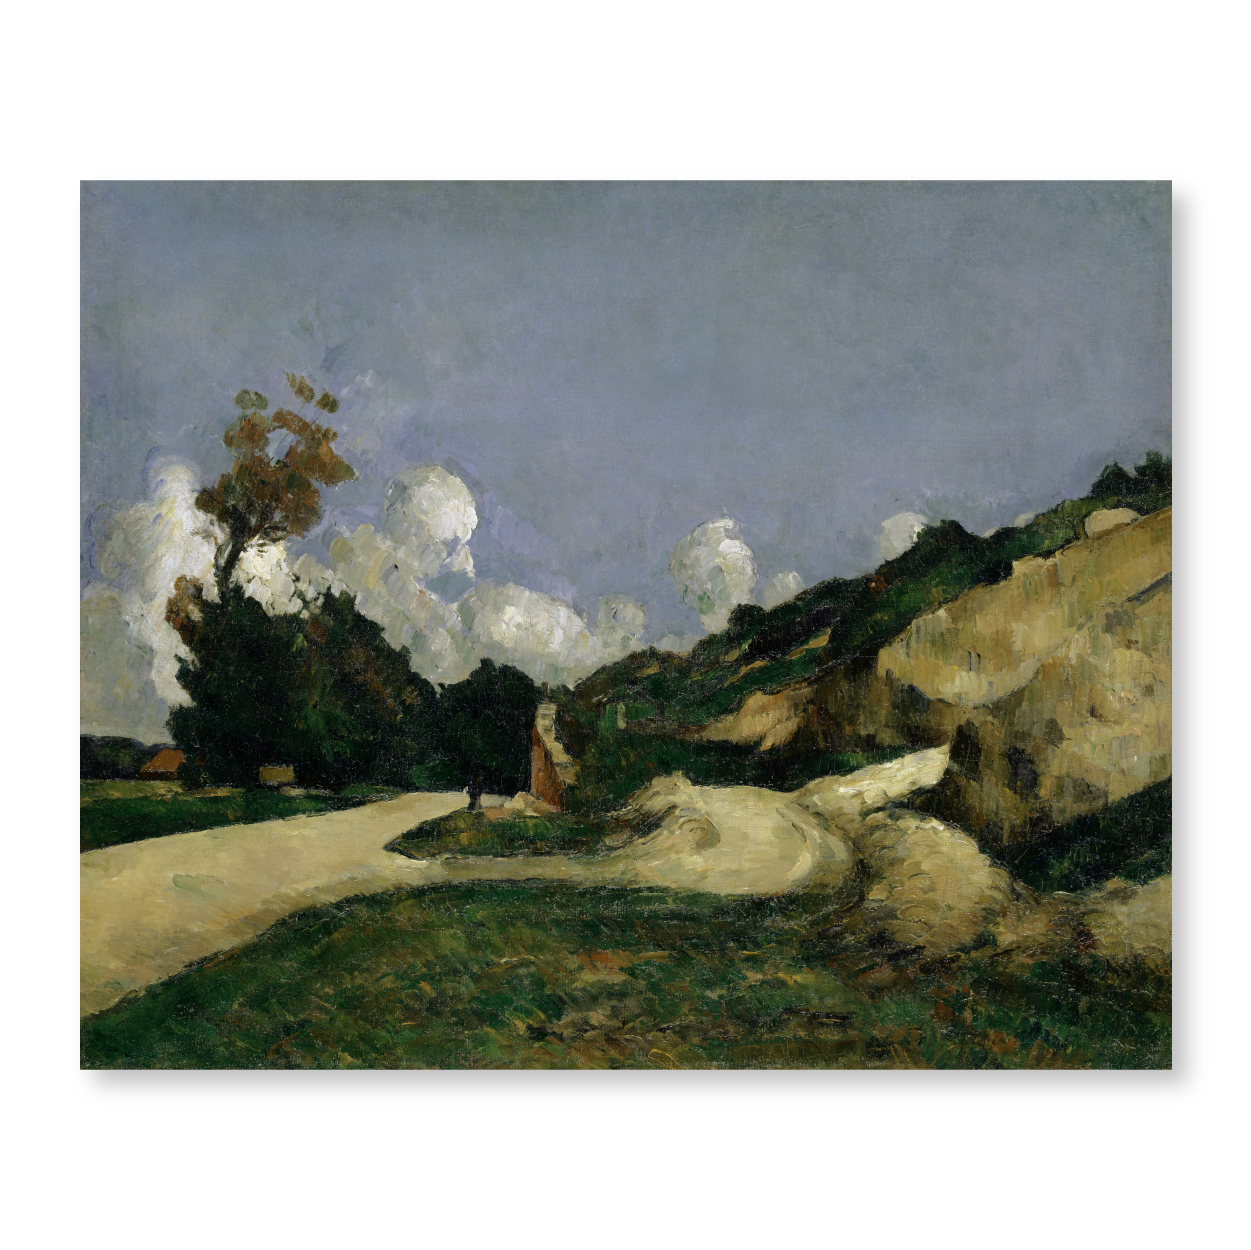 Paul Cézanne - "The Road"